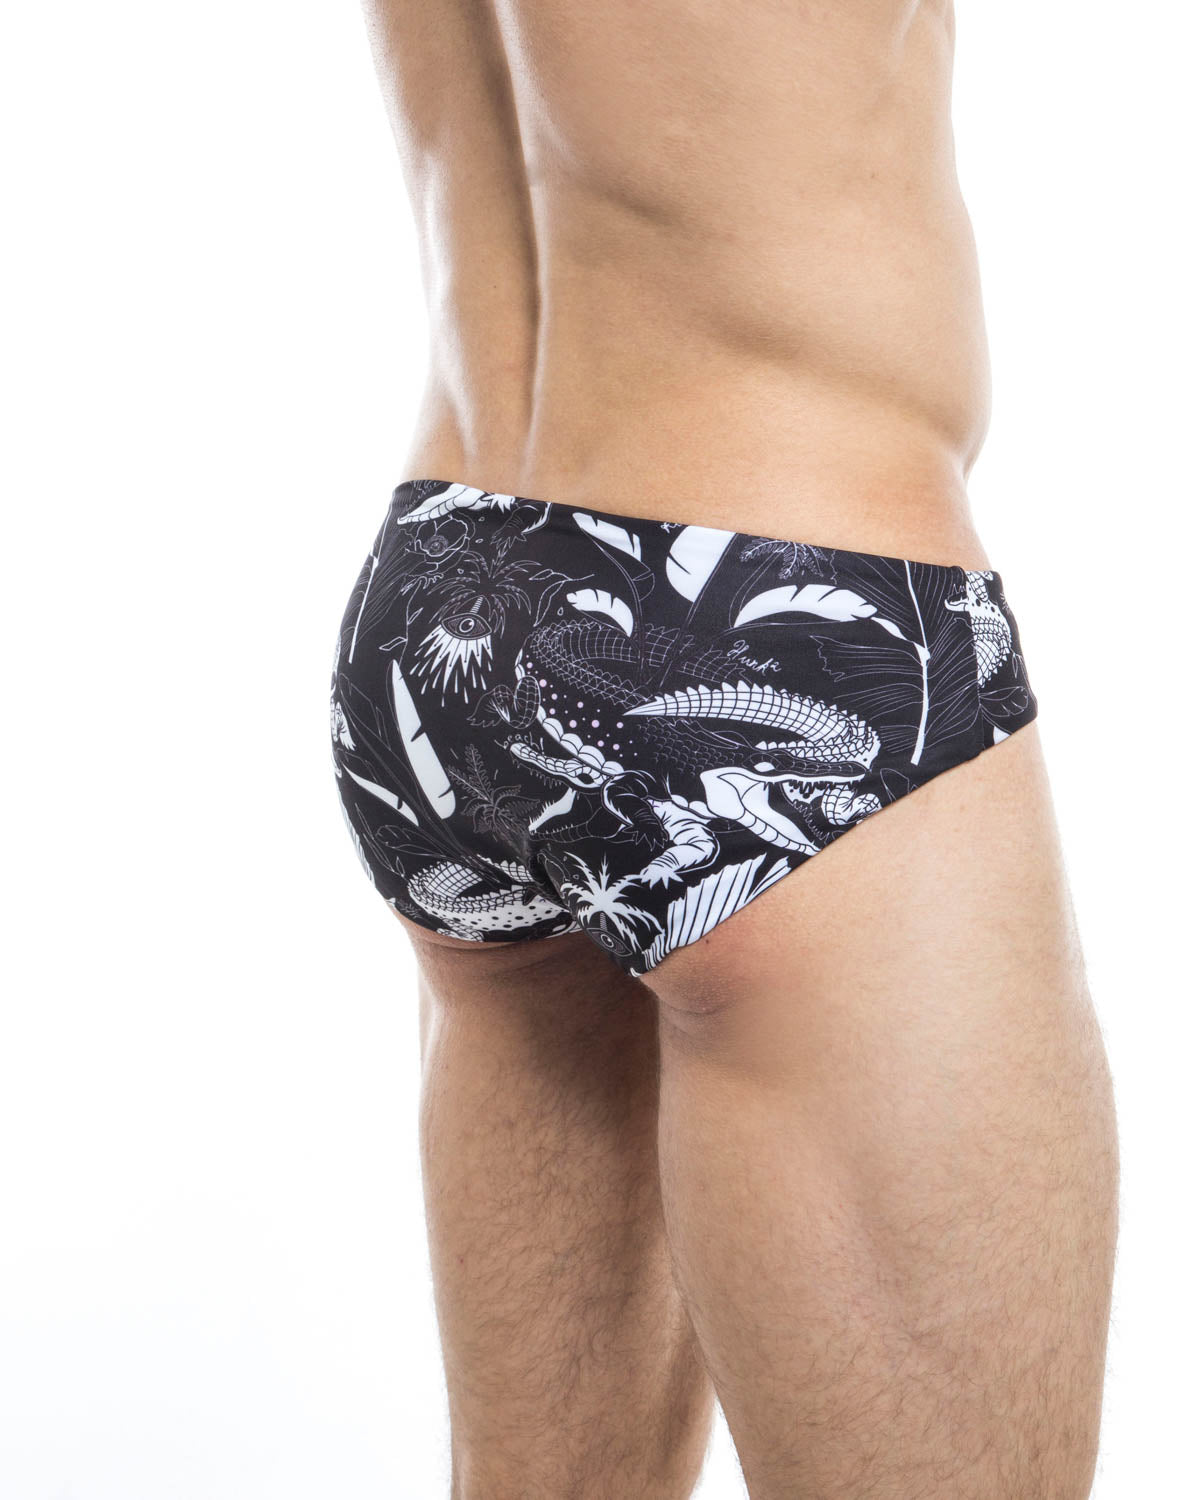 Men's swim briefs - HUNK2 Underwear Einfarbig Reversible Swim Briefs available at MensUnderwear.io - Image 1